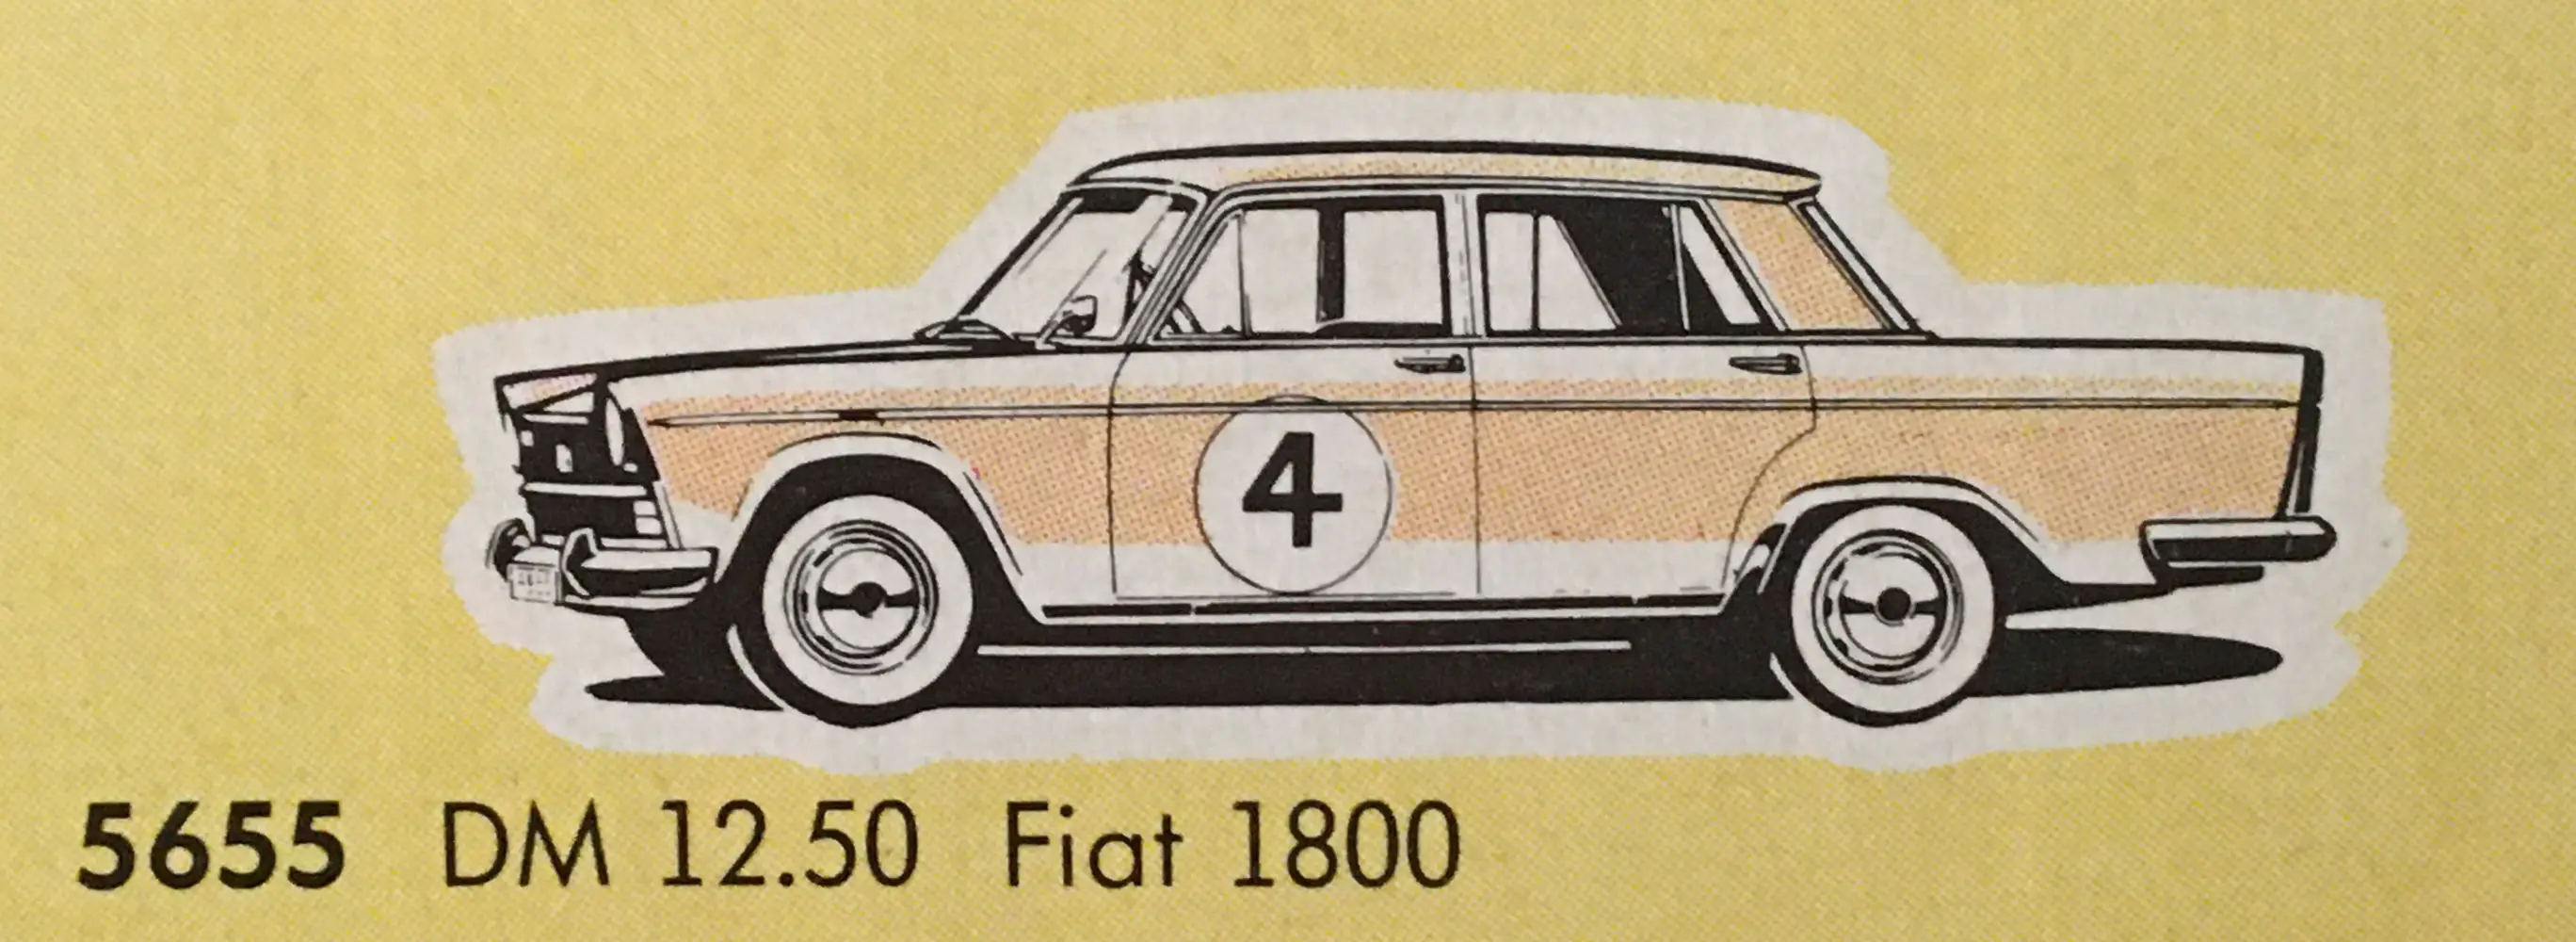 Bild vom Faller Fiat 1800